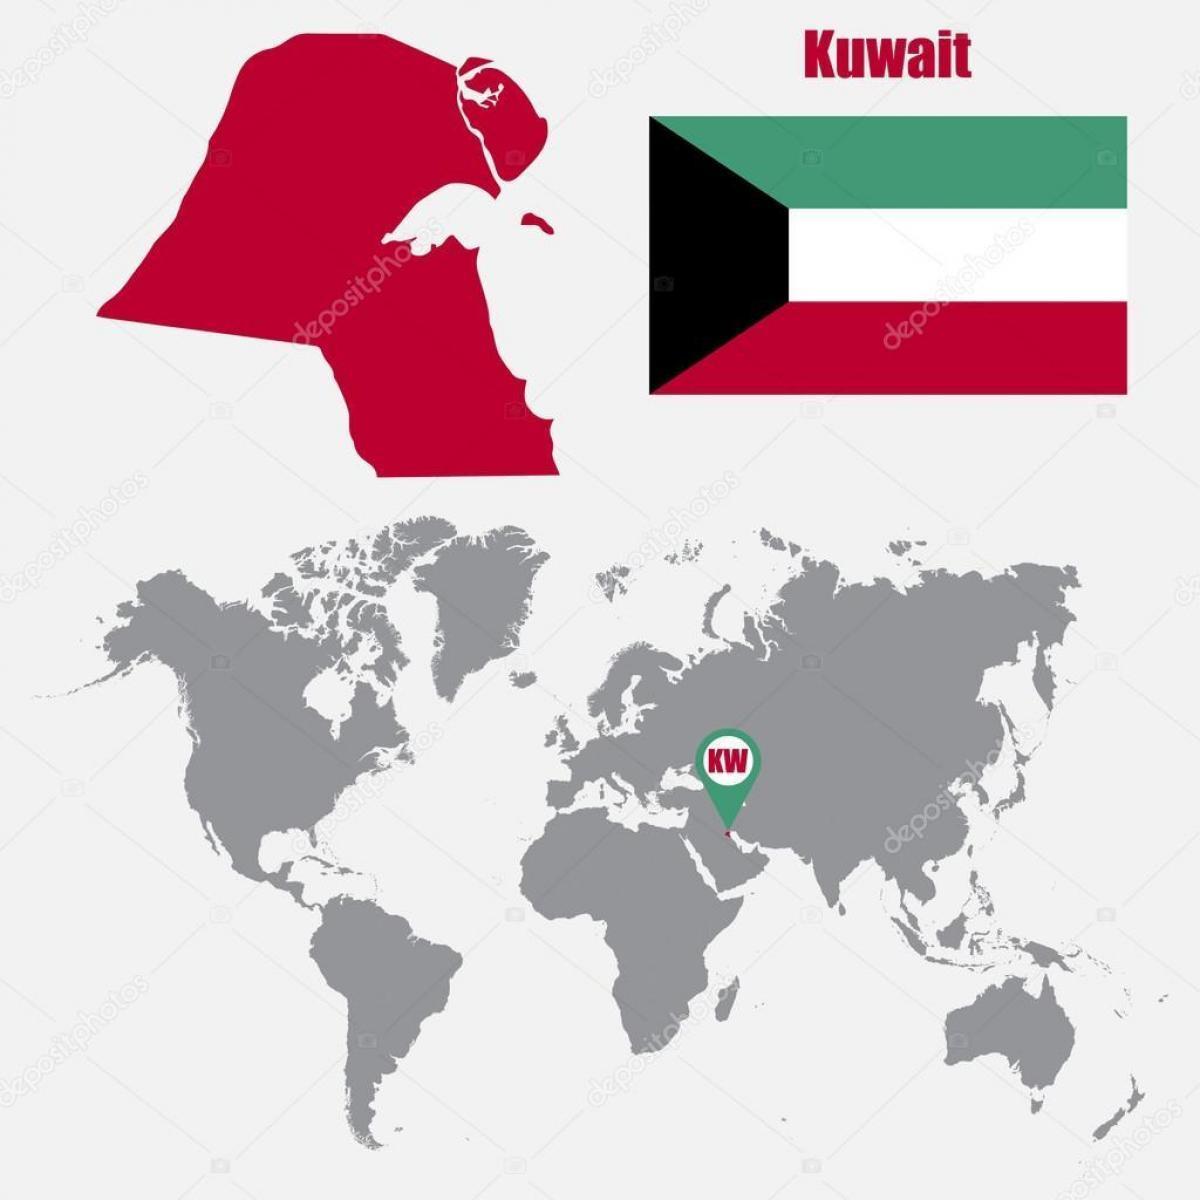 kuwait kort i verden kort